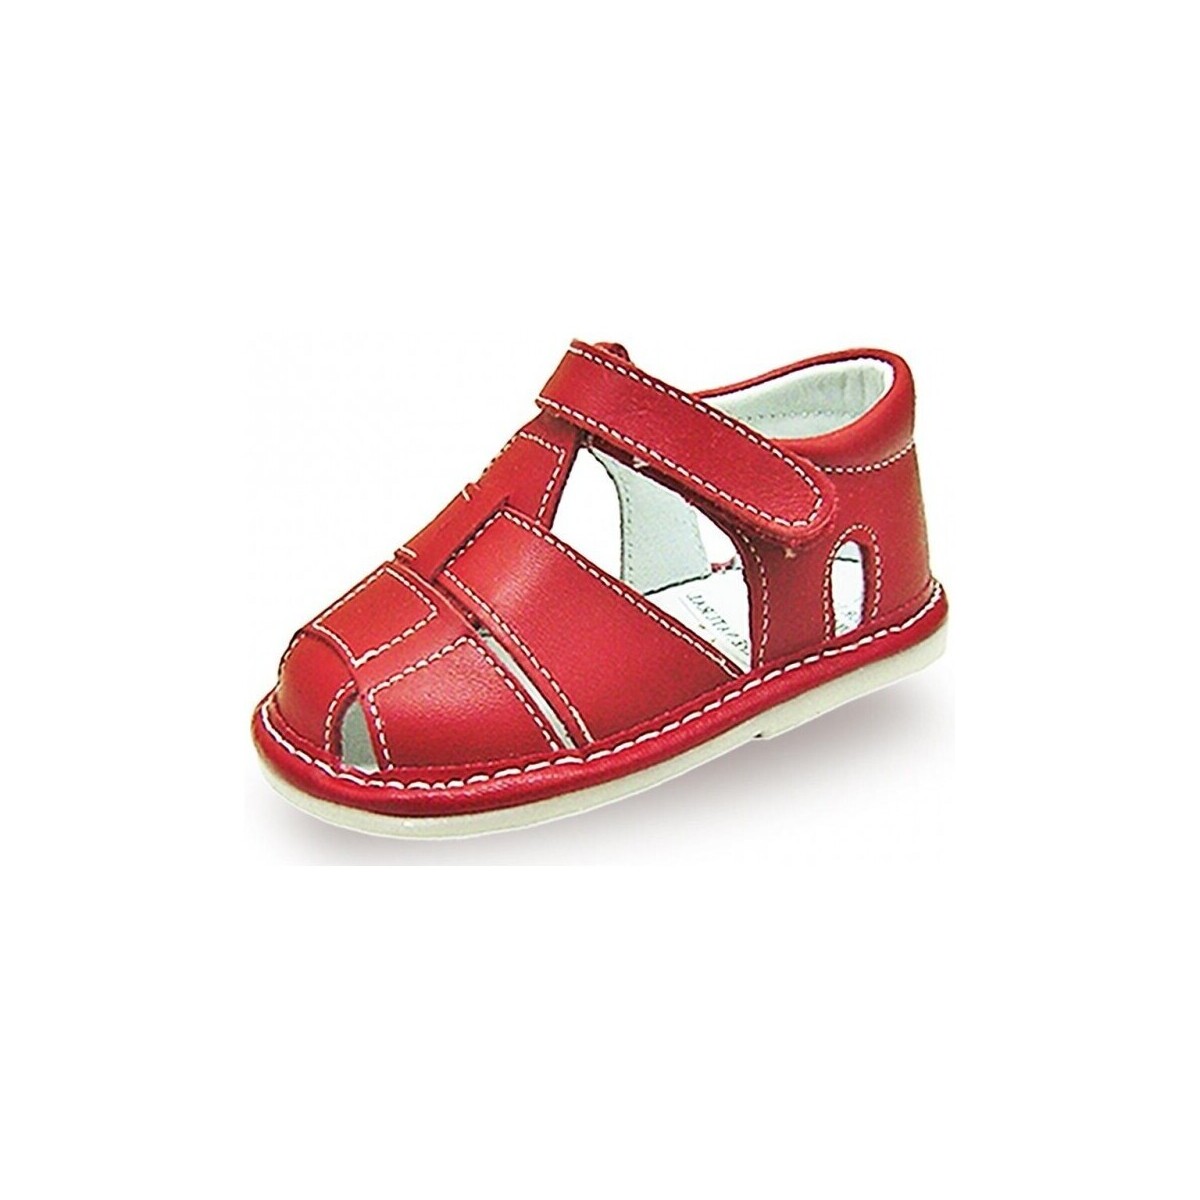 kengät Sandaalit ja avokkaat Colores 21847-15 Punainen